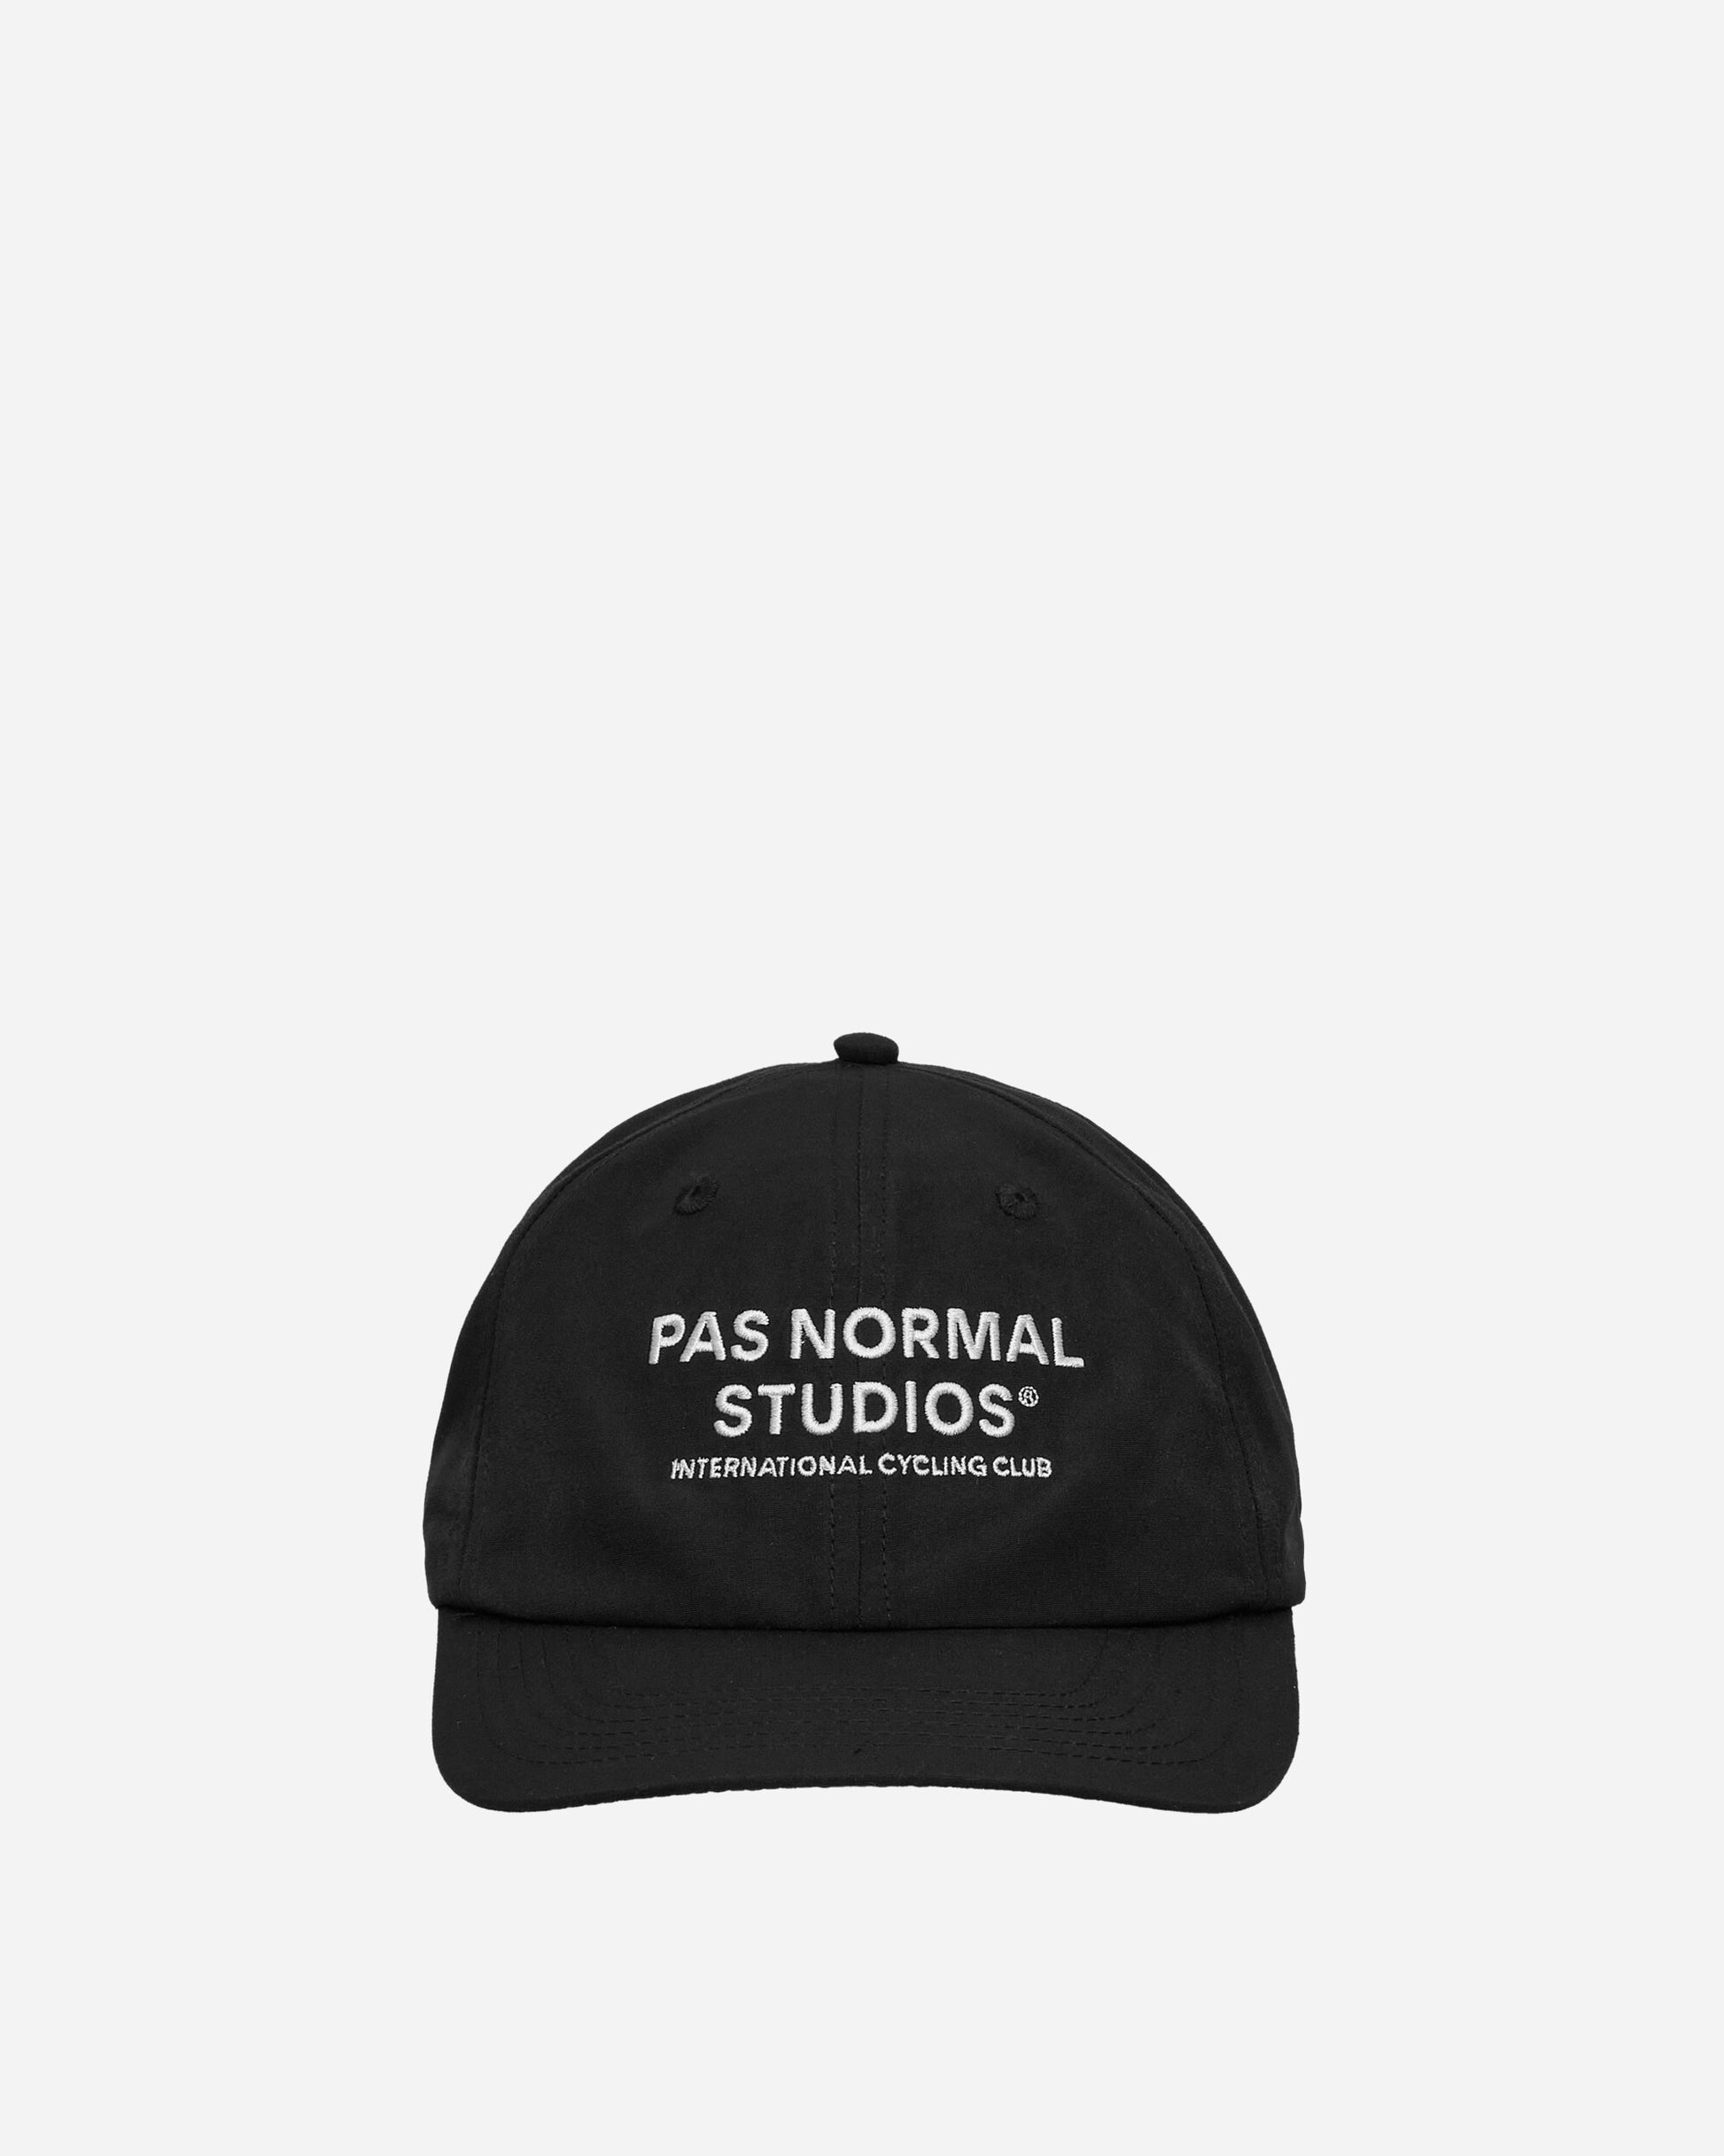 Pas Normal Studios Off-Race Cap Black Hats Caps NAN2027AF 1999